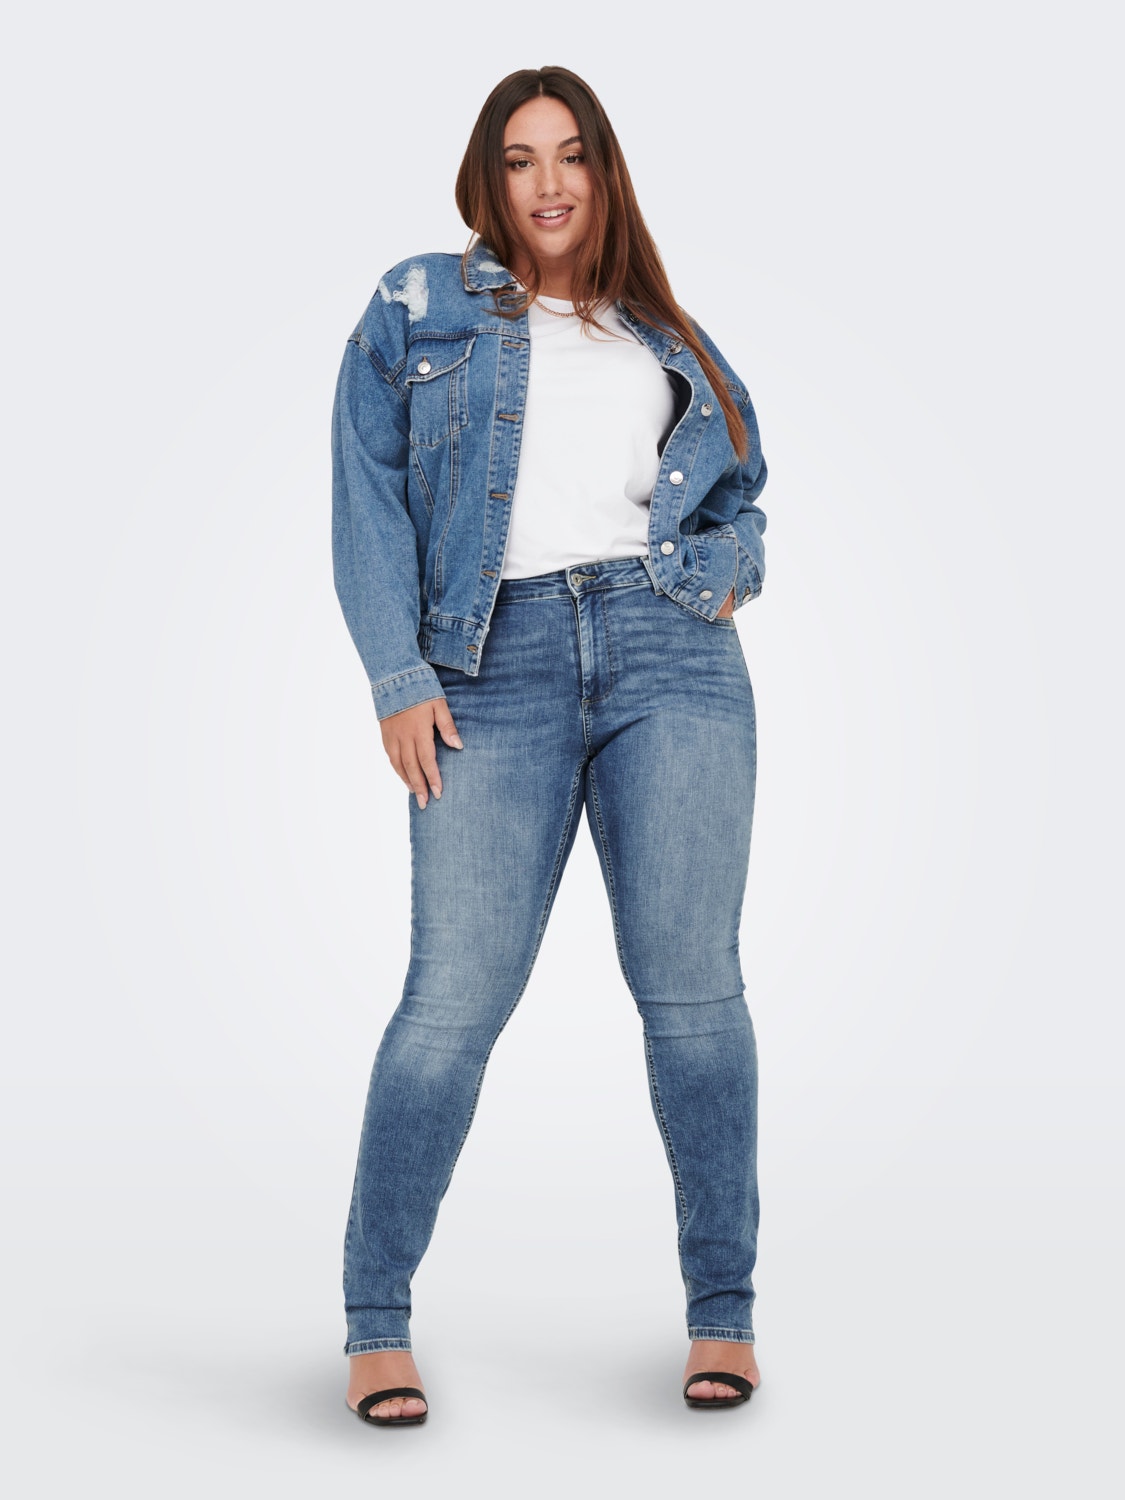 ONLY Curvy CARWilly Slim fit jeans -Medium Blue Denim - 15253109